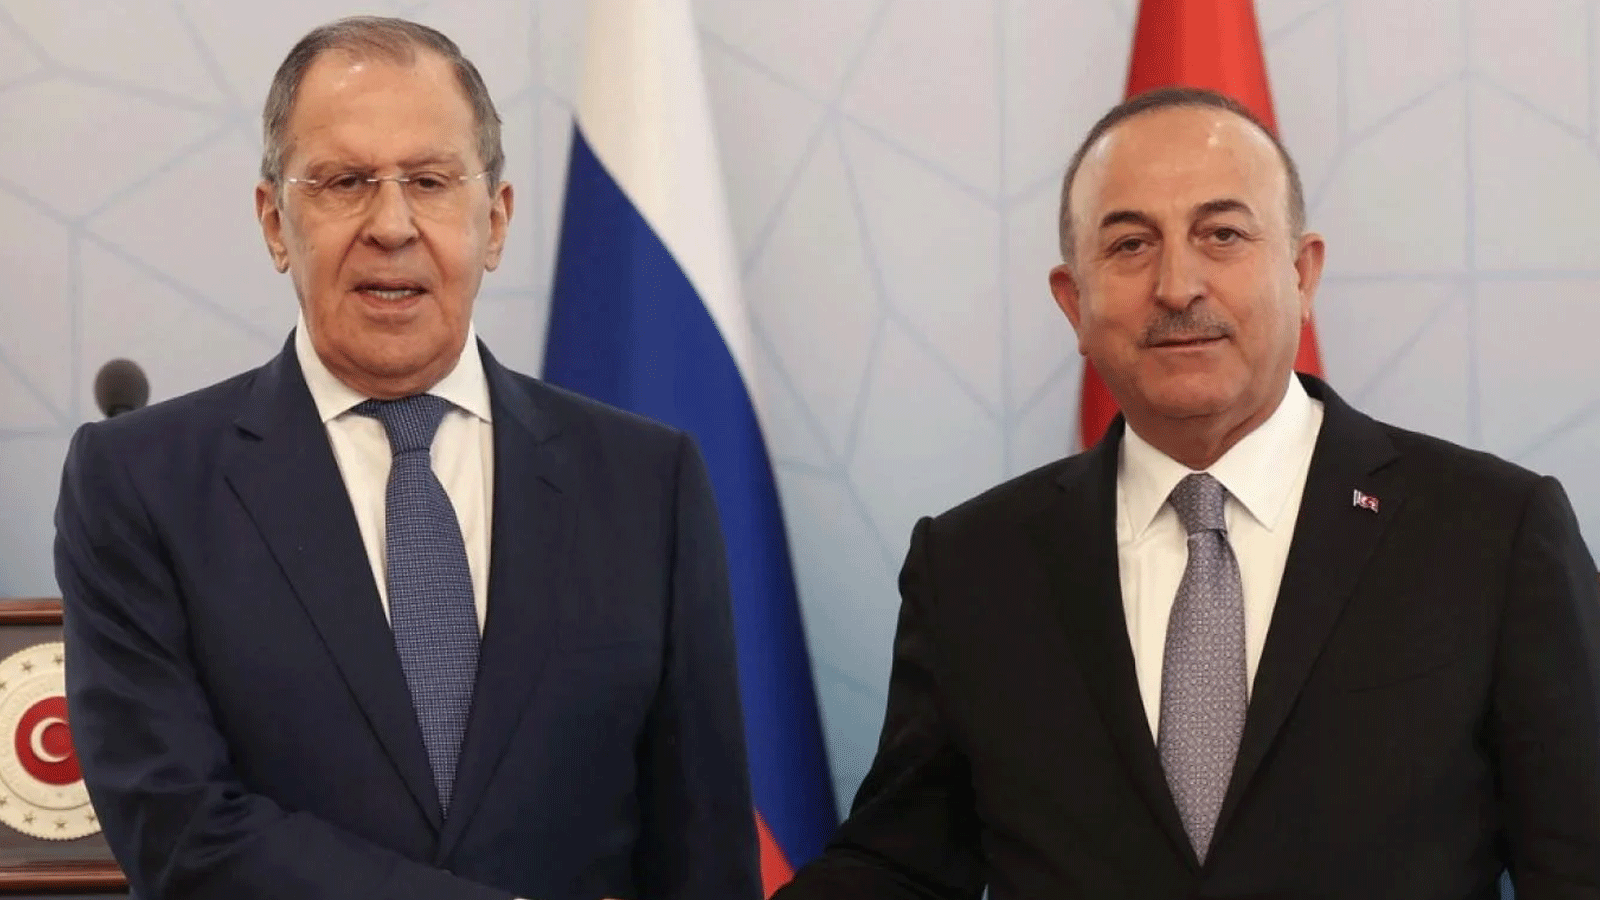 وزير الخارجية الروسي سيرغي لافروف (إلى اليسار) ووزير الخارجية التركي مولود جاويش أوغلو (إلى اليمين) يتصافحان بعد مؤتمر صحفي في أنقرة. 8 حزيران\يونيو 2022